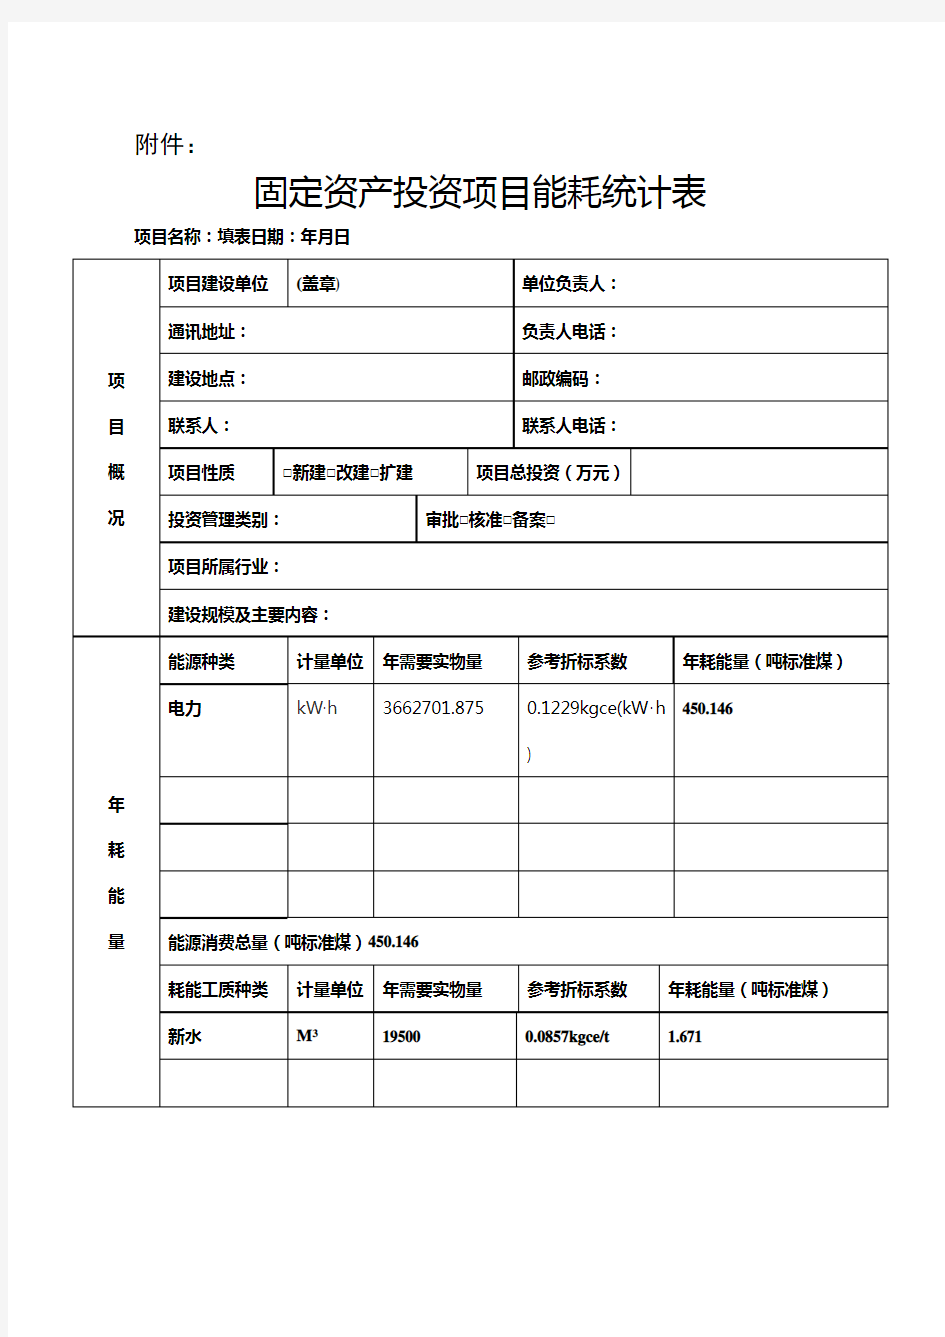 四川省固定资产投资项目在线审批监管平台能耗统计表(填写范例)